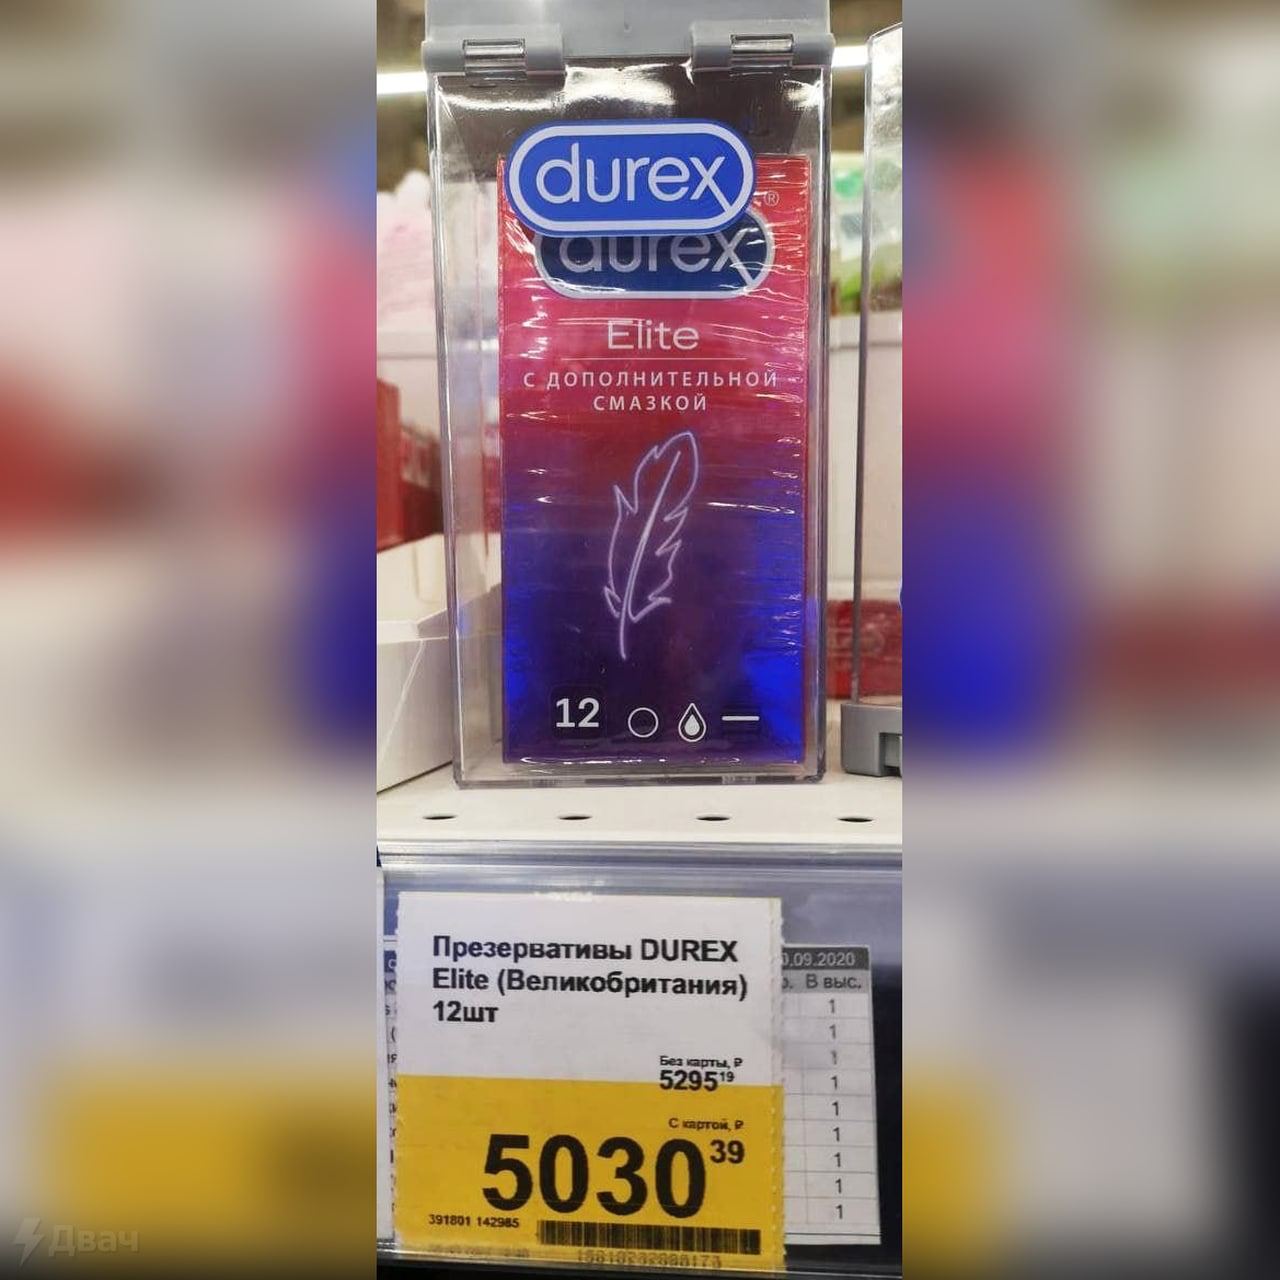 Durex подала документы для возобновления продажи презервативов в РФ